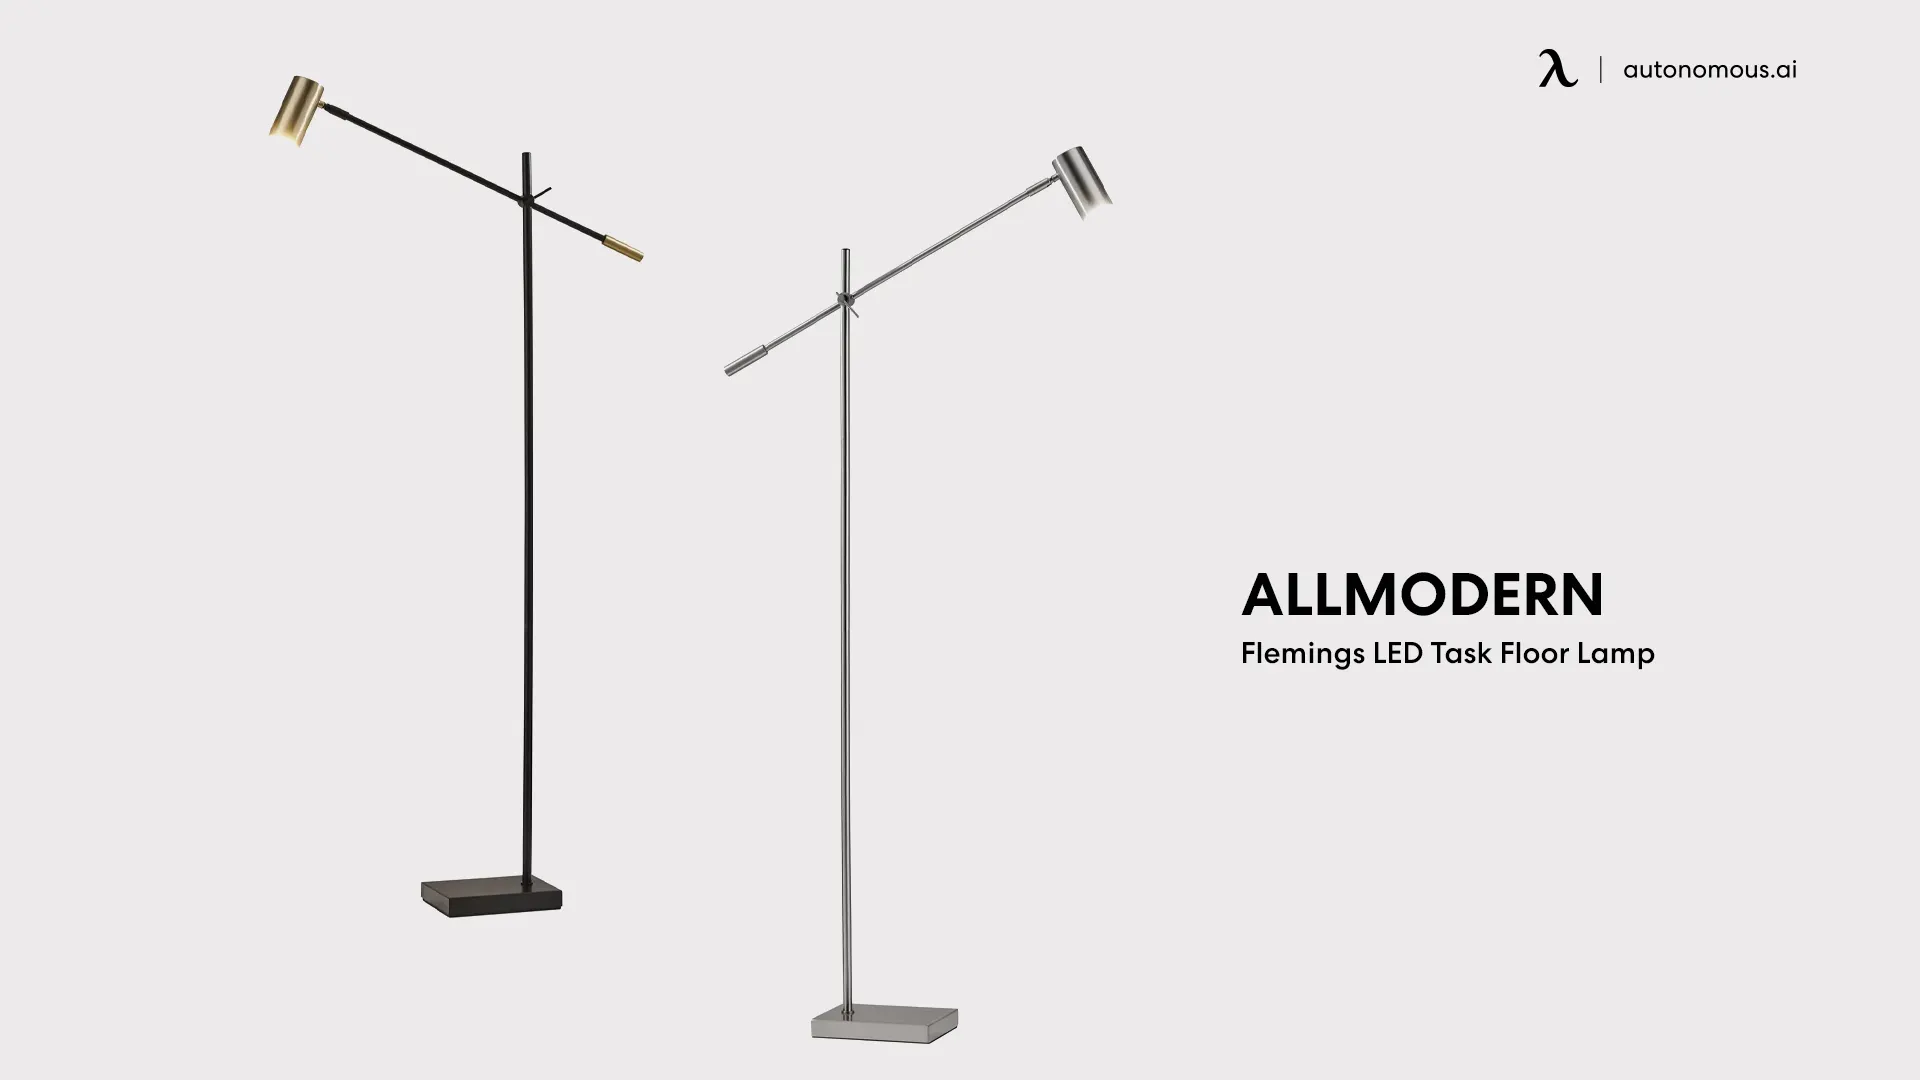 Allmodern Flemings LED Task Floor Lamp